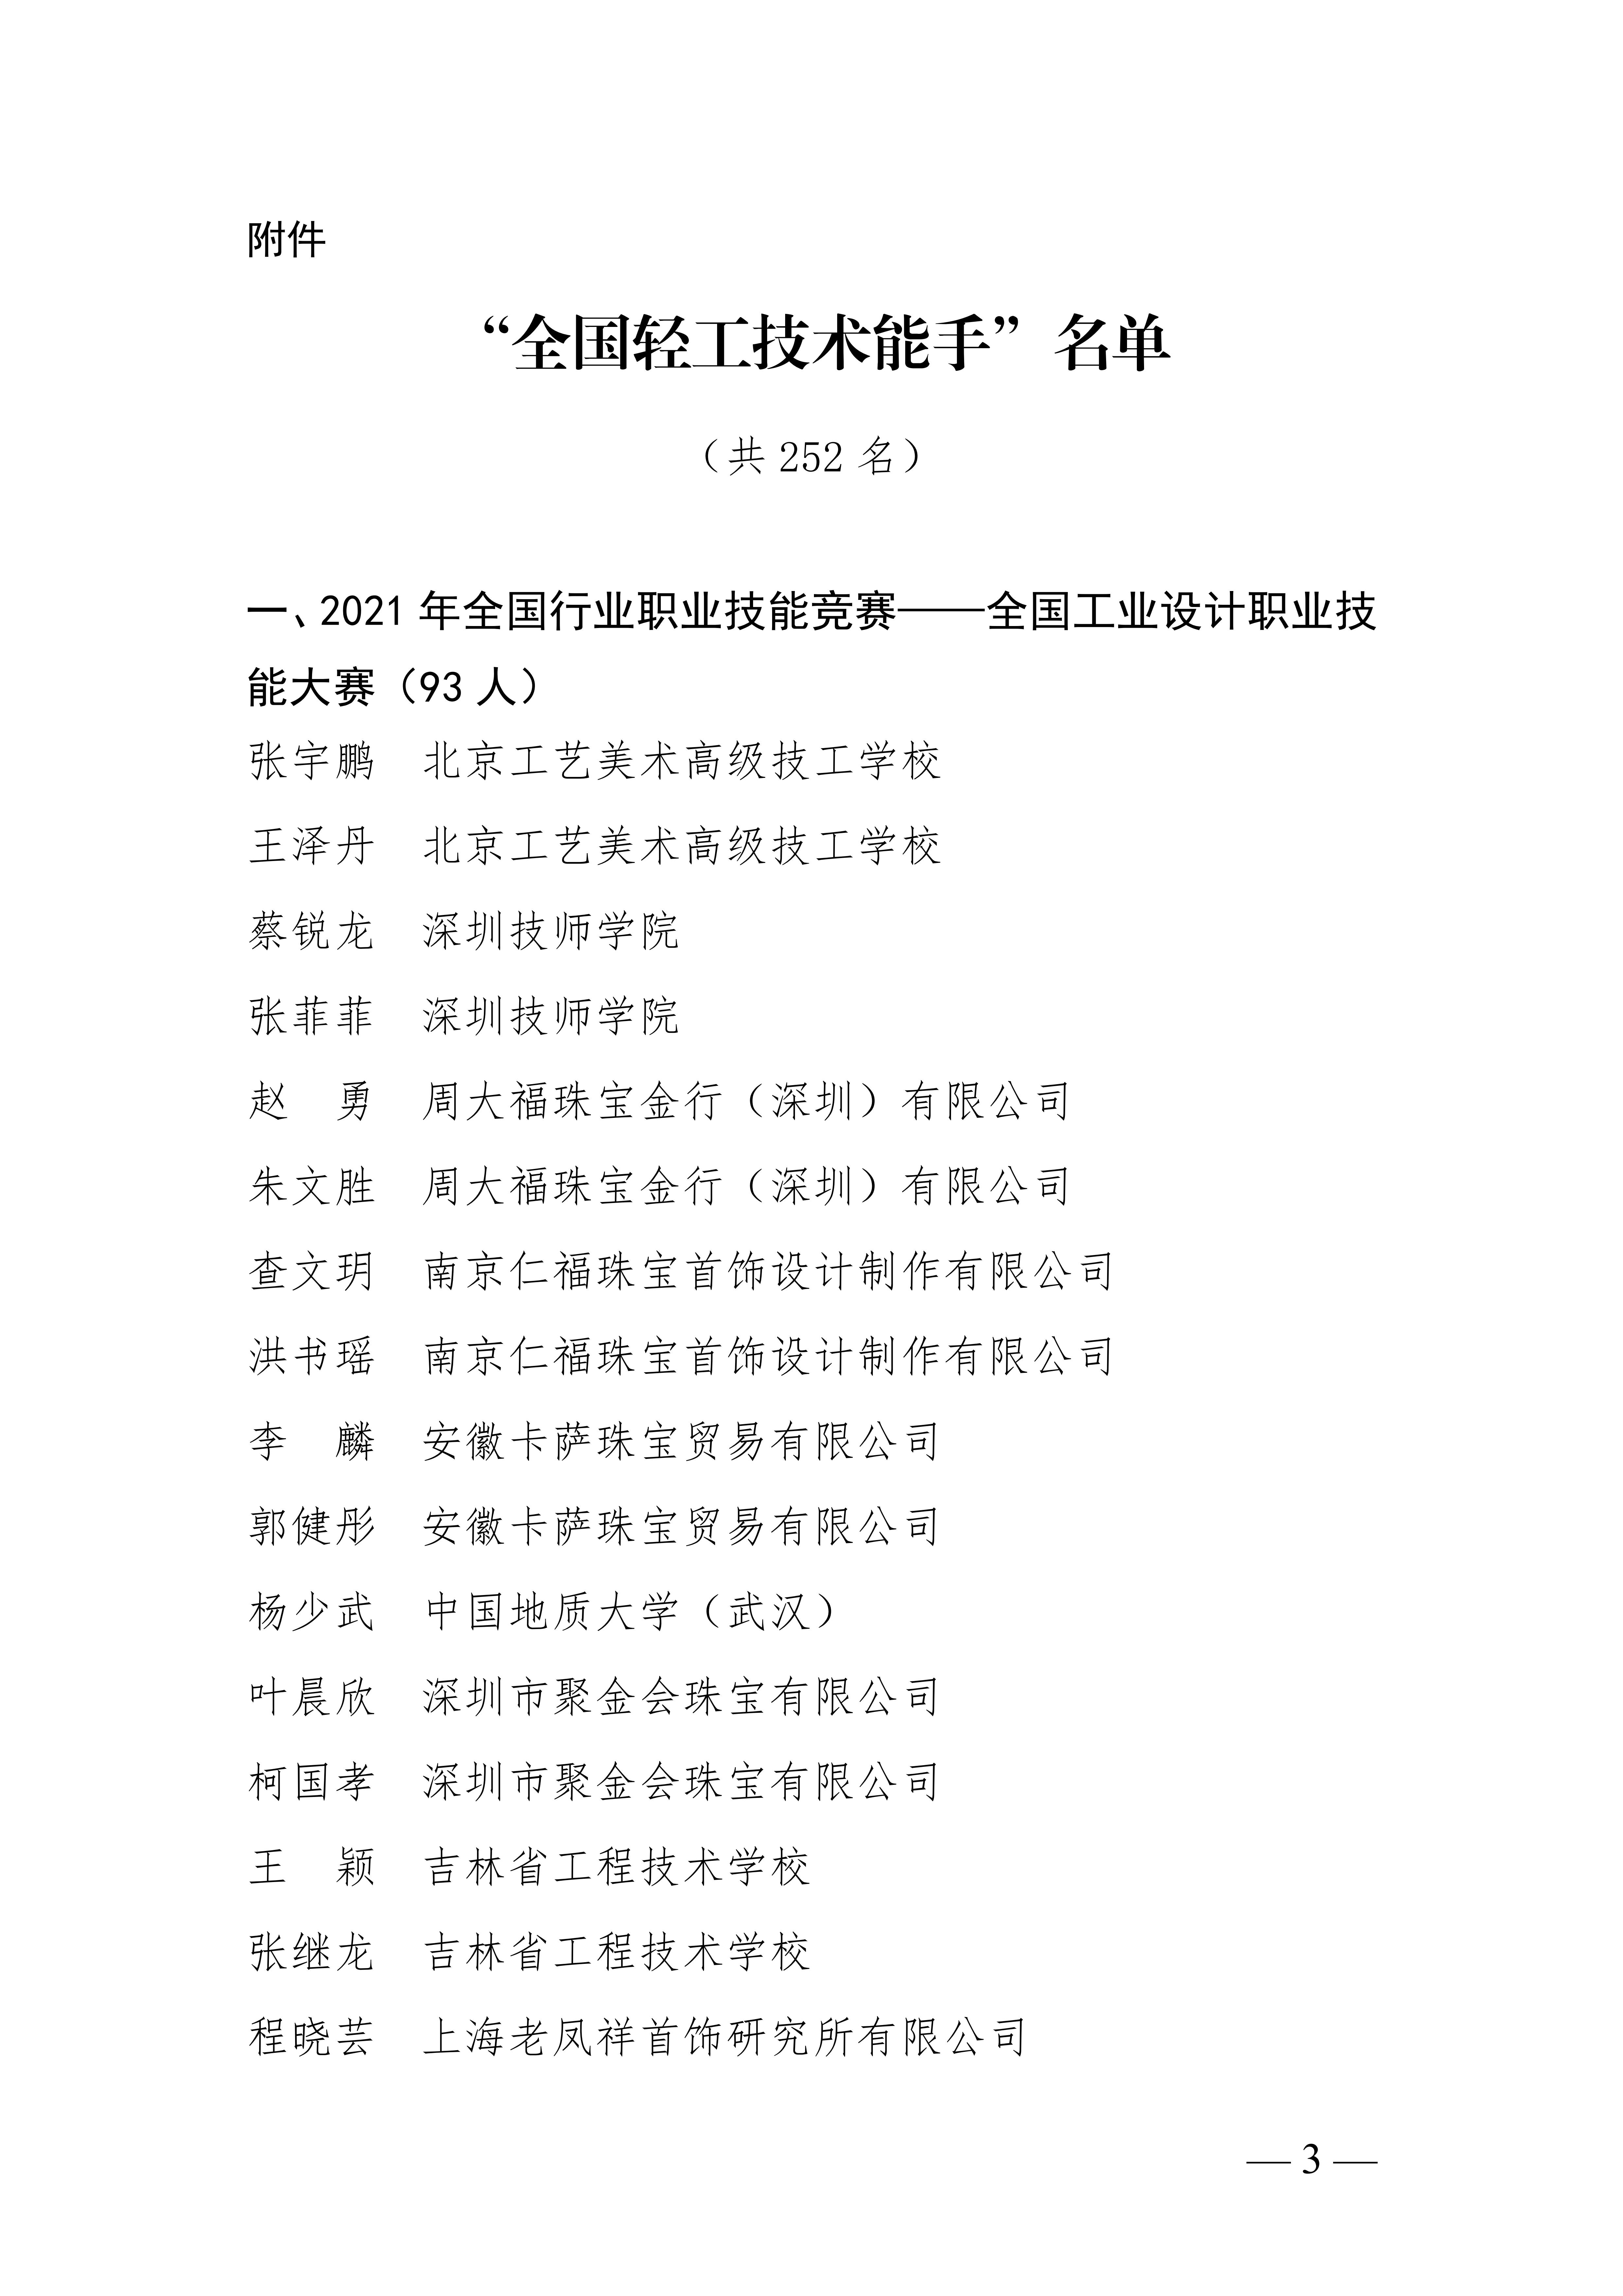 关于授予张宇鹏等252名同志“全国轻工技术能手”荣誉称号的决定_02.jpg